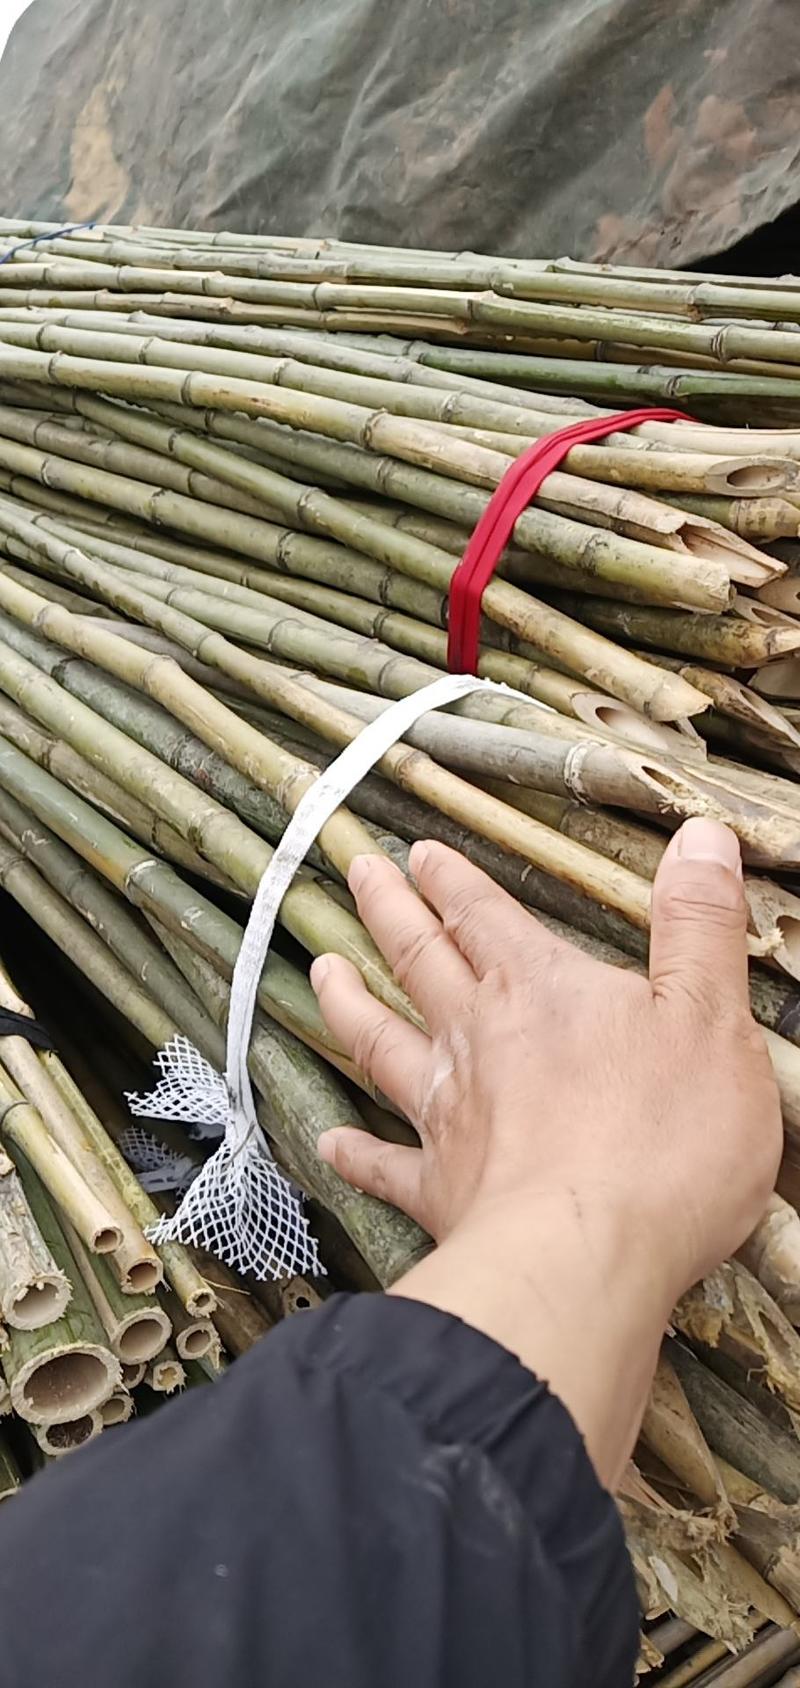 竹竿，优质2.2米竹竿，尾径0.8cm，根径1.5cm